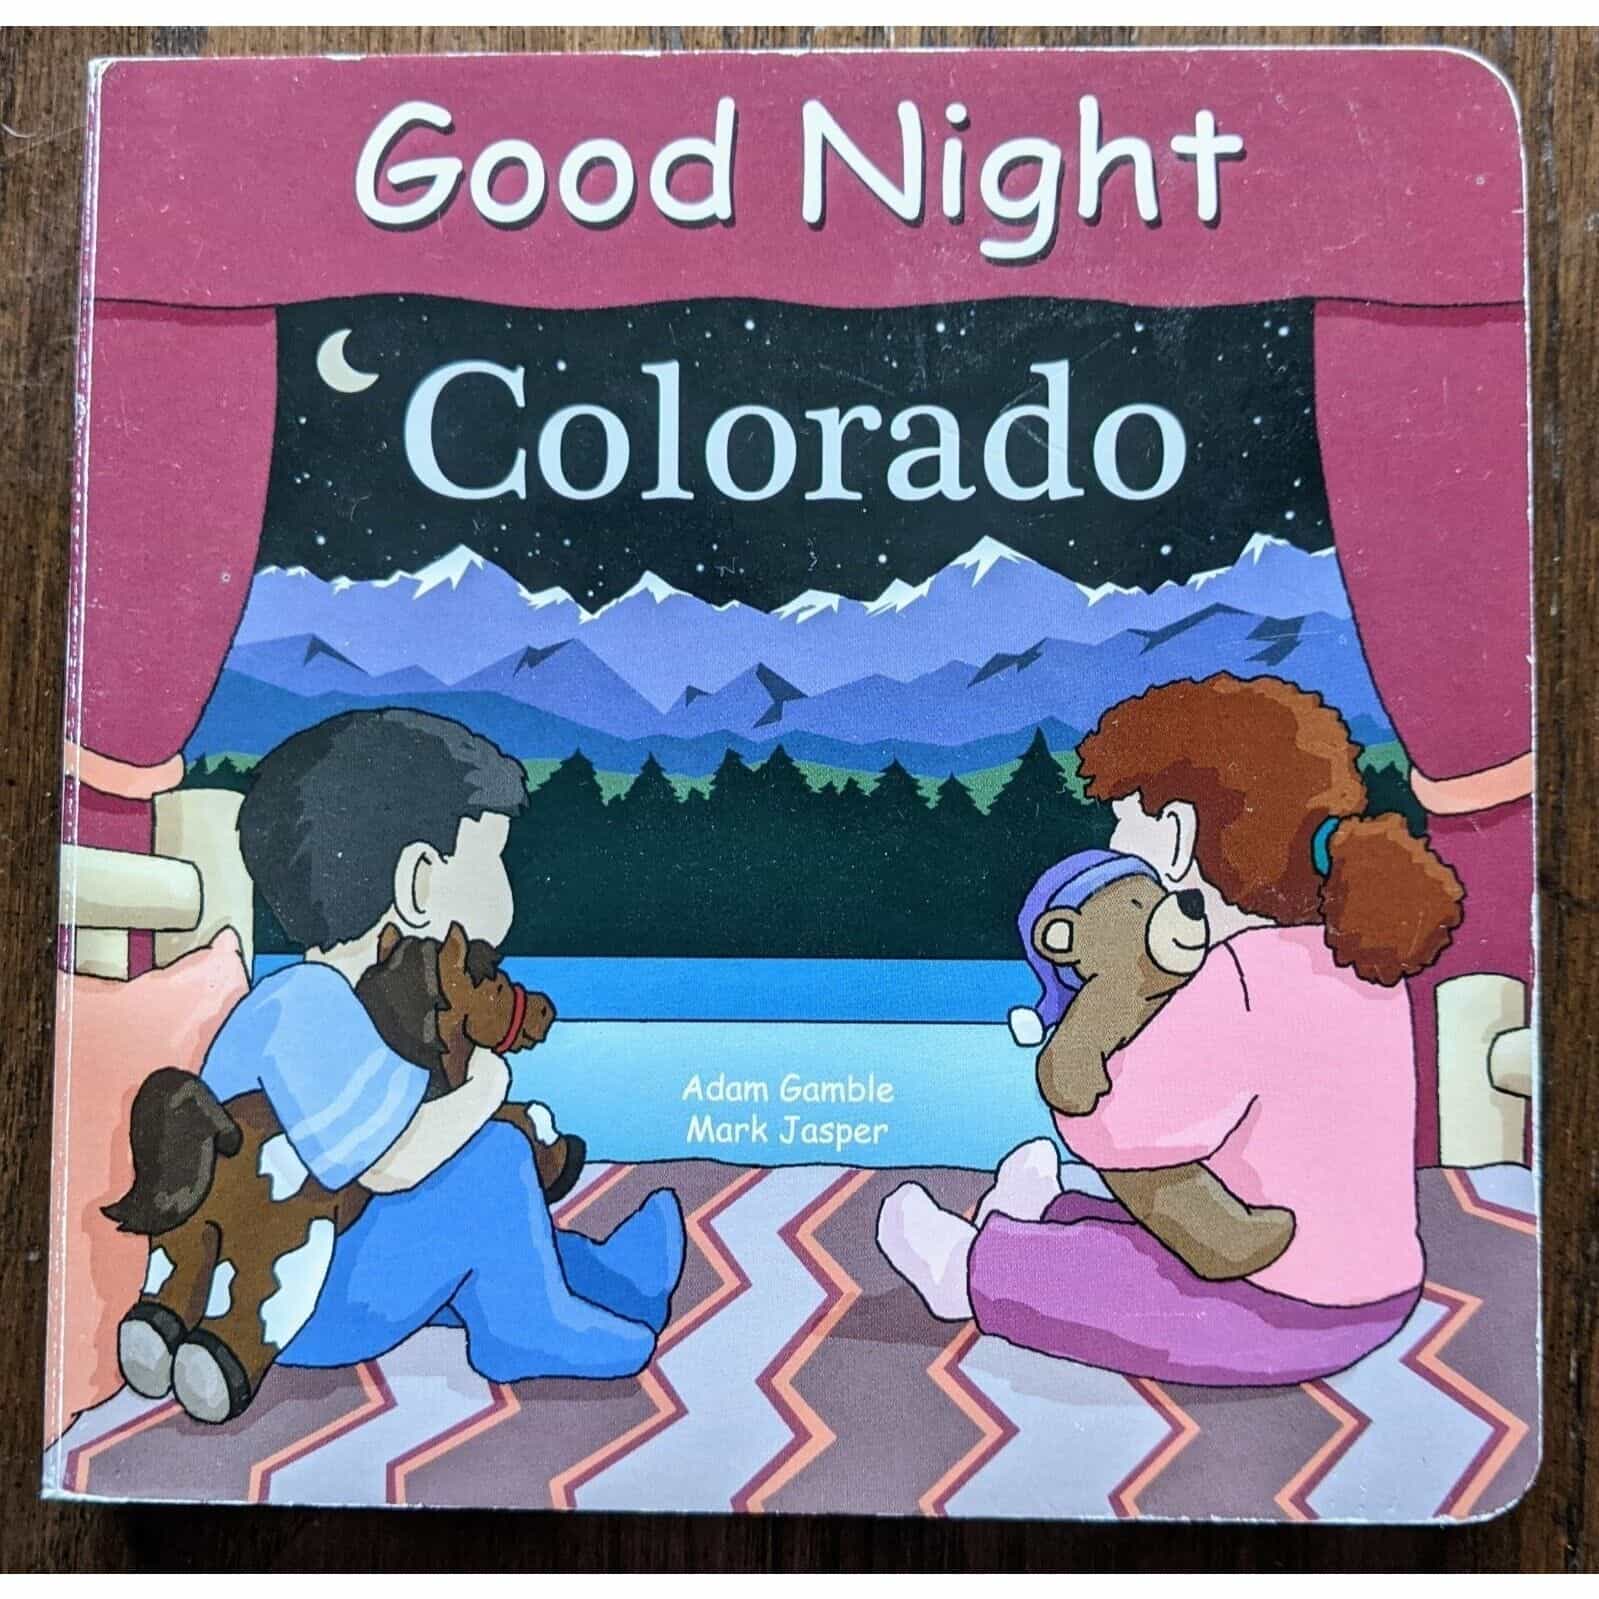 Good Night Colorado by Adam Gamble